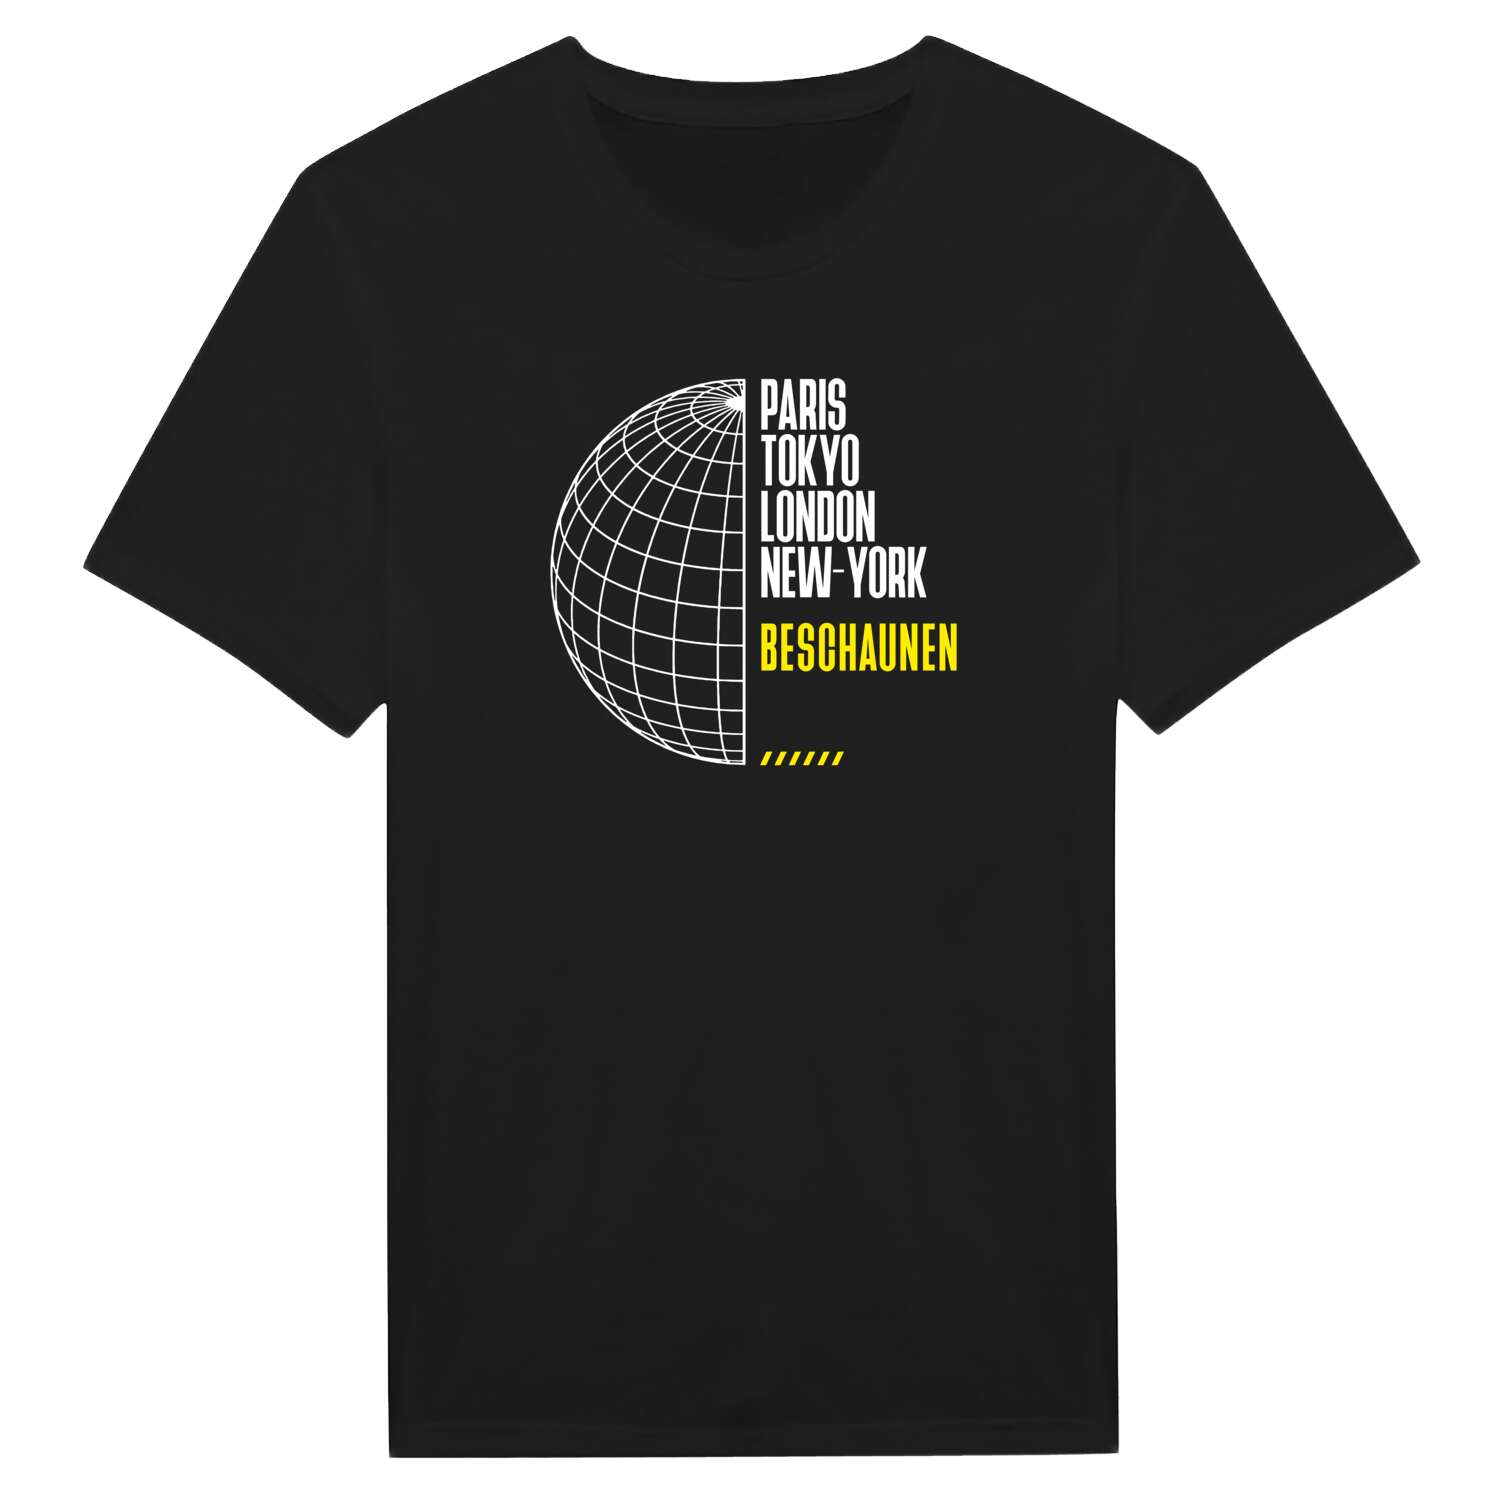 Beschaunen T-Shirt »Paris Tokyo London«